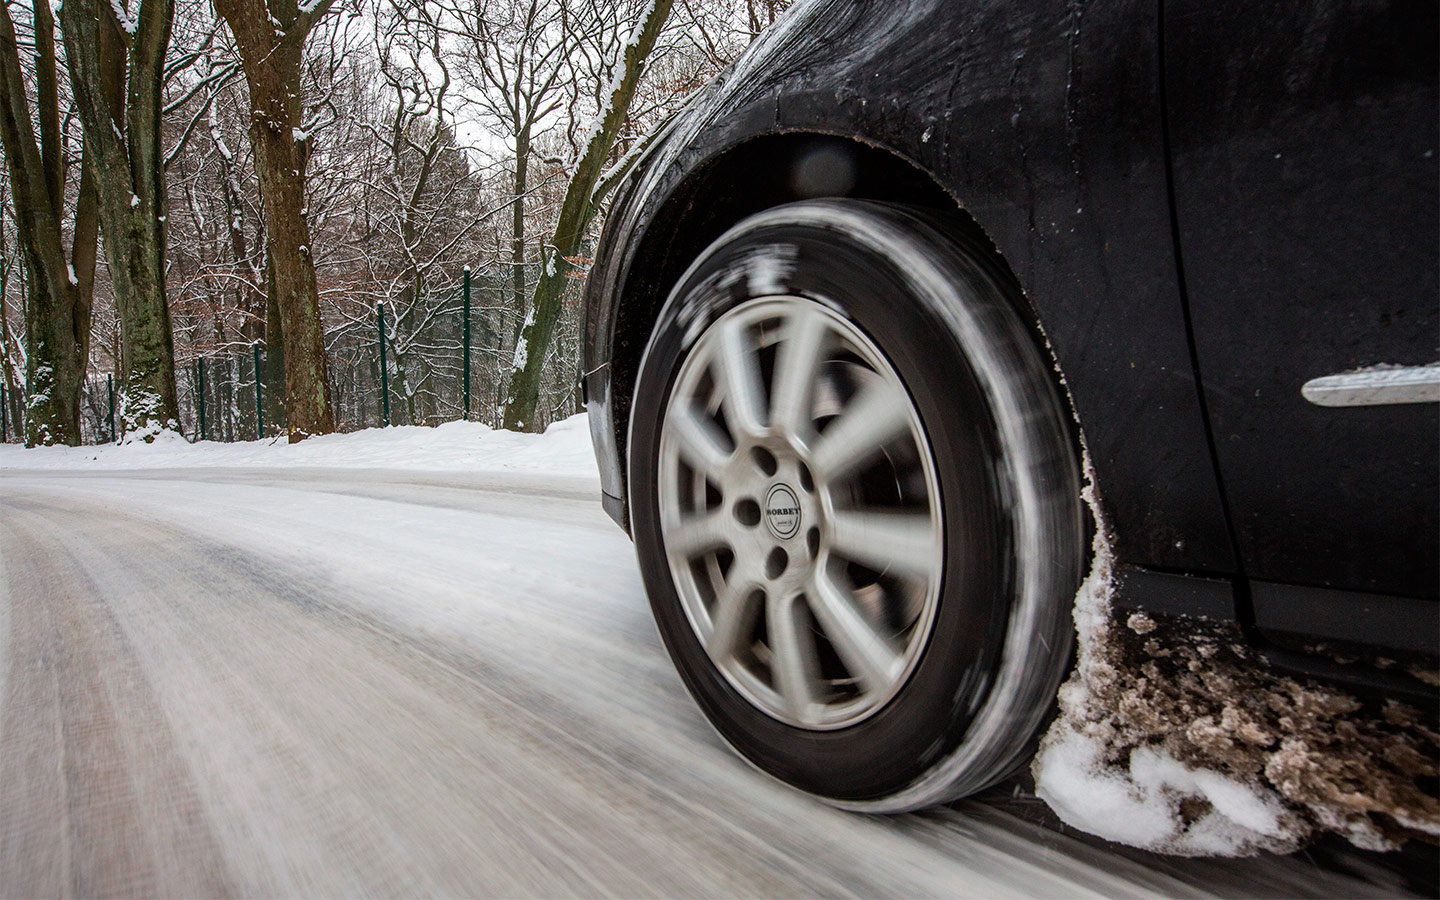 Система ABS не допускает блокировки колес при экстренном и интенсивном торможении и позволяет автомобилю оставаться управляемым.